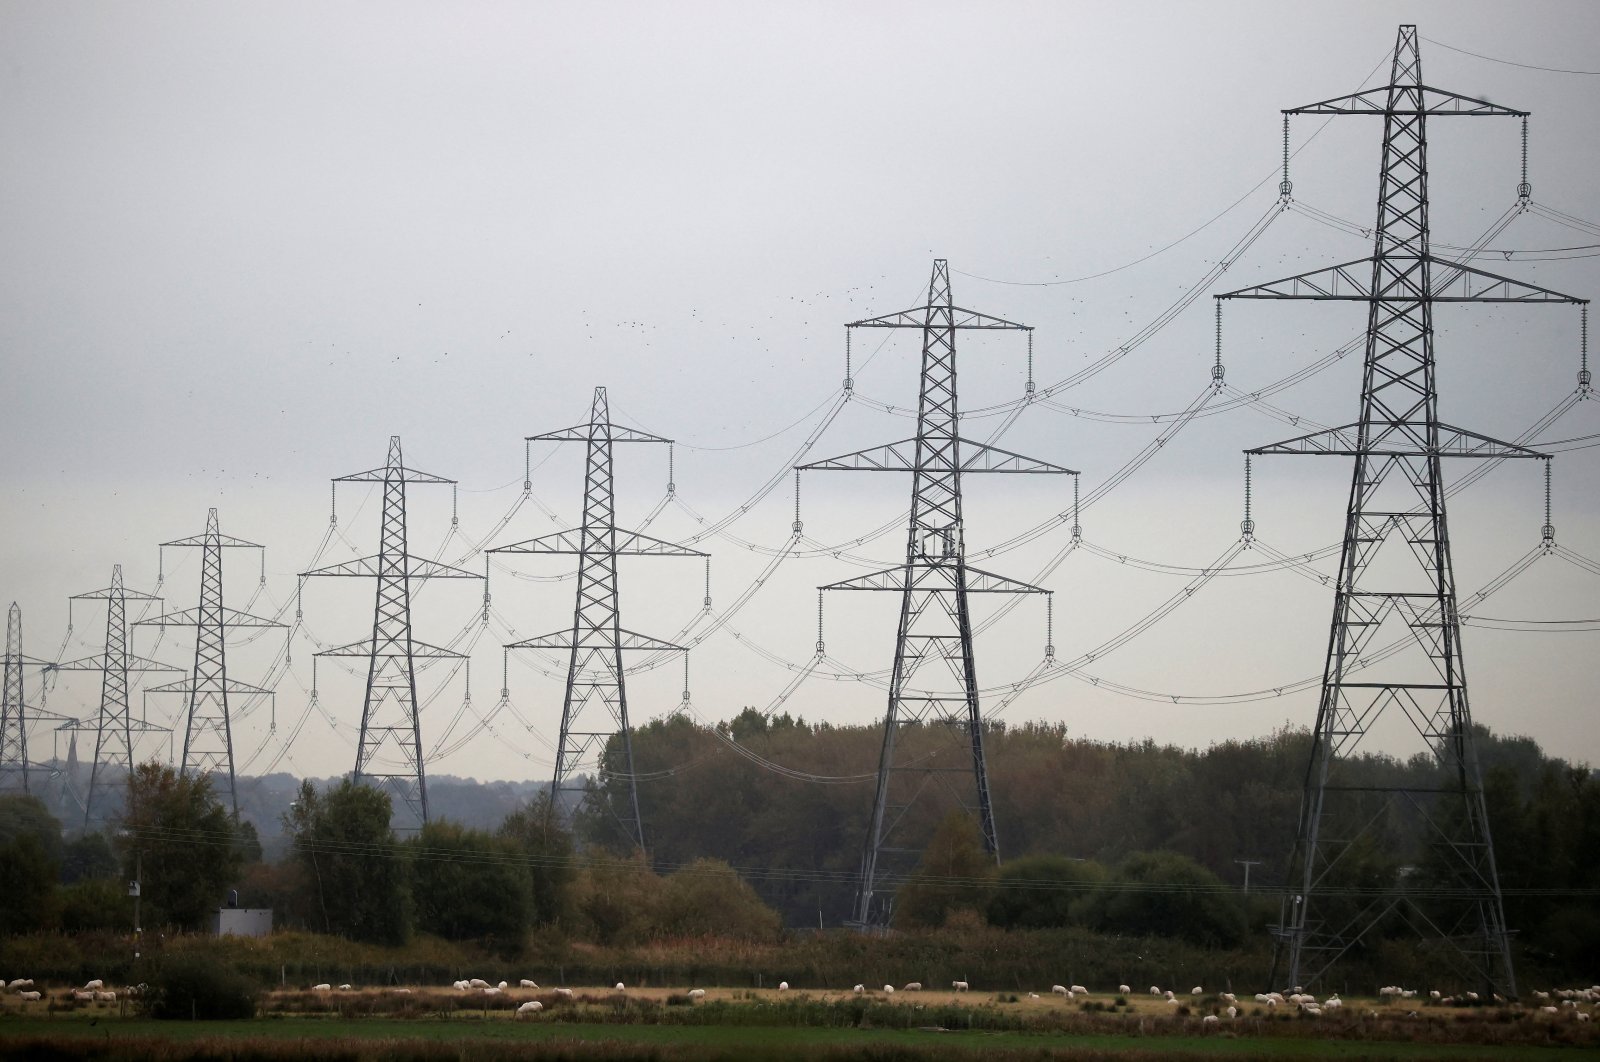 Inggris membatasi tagihan dalam upaya untuk melindungi bisnis dari krisis energi